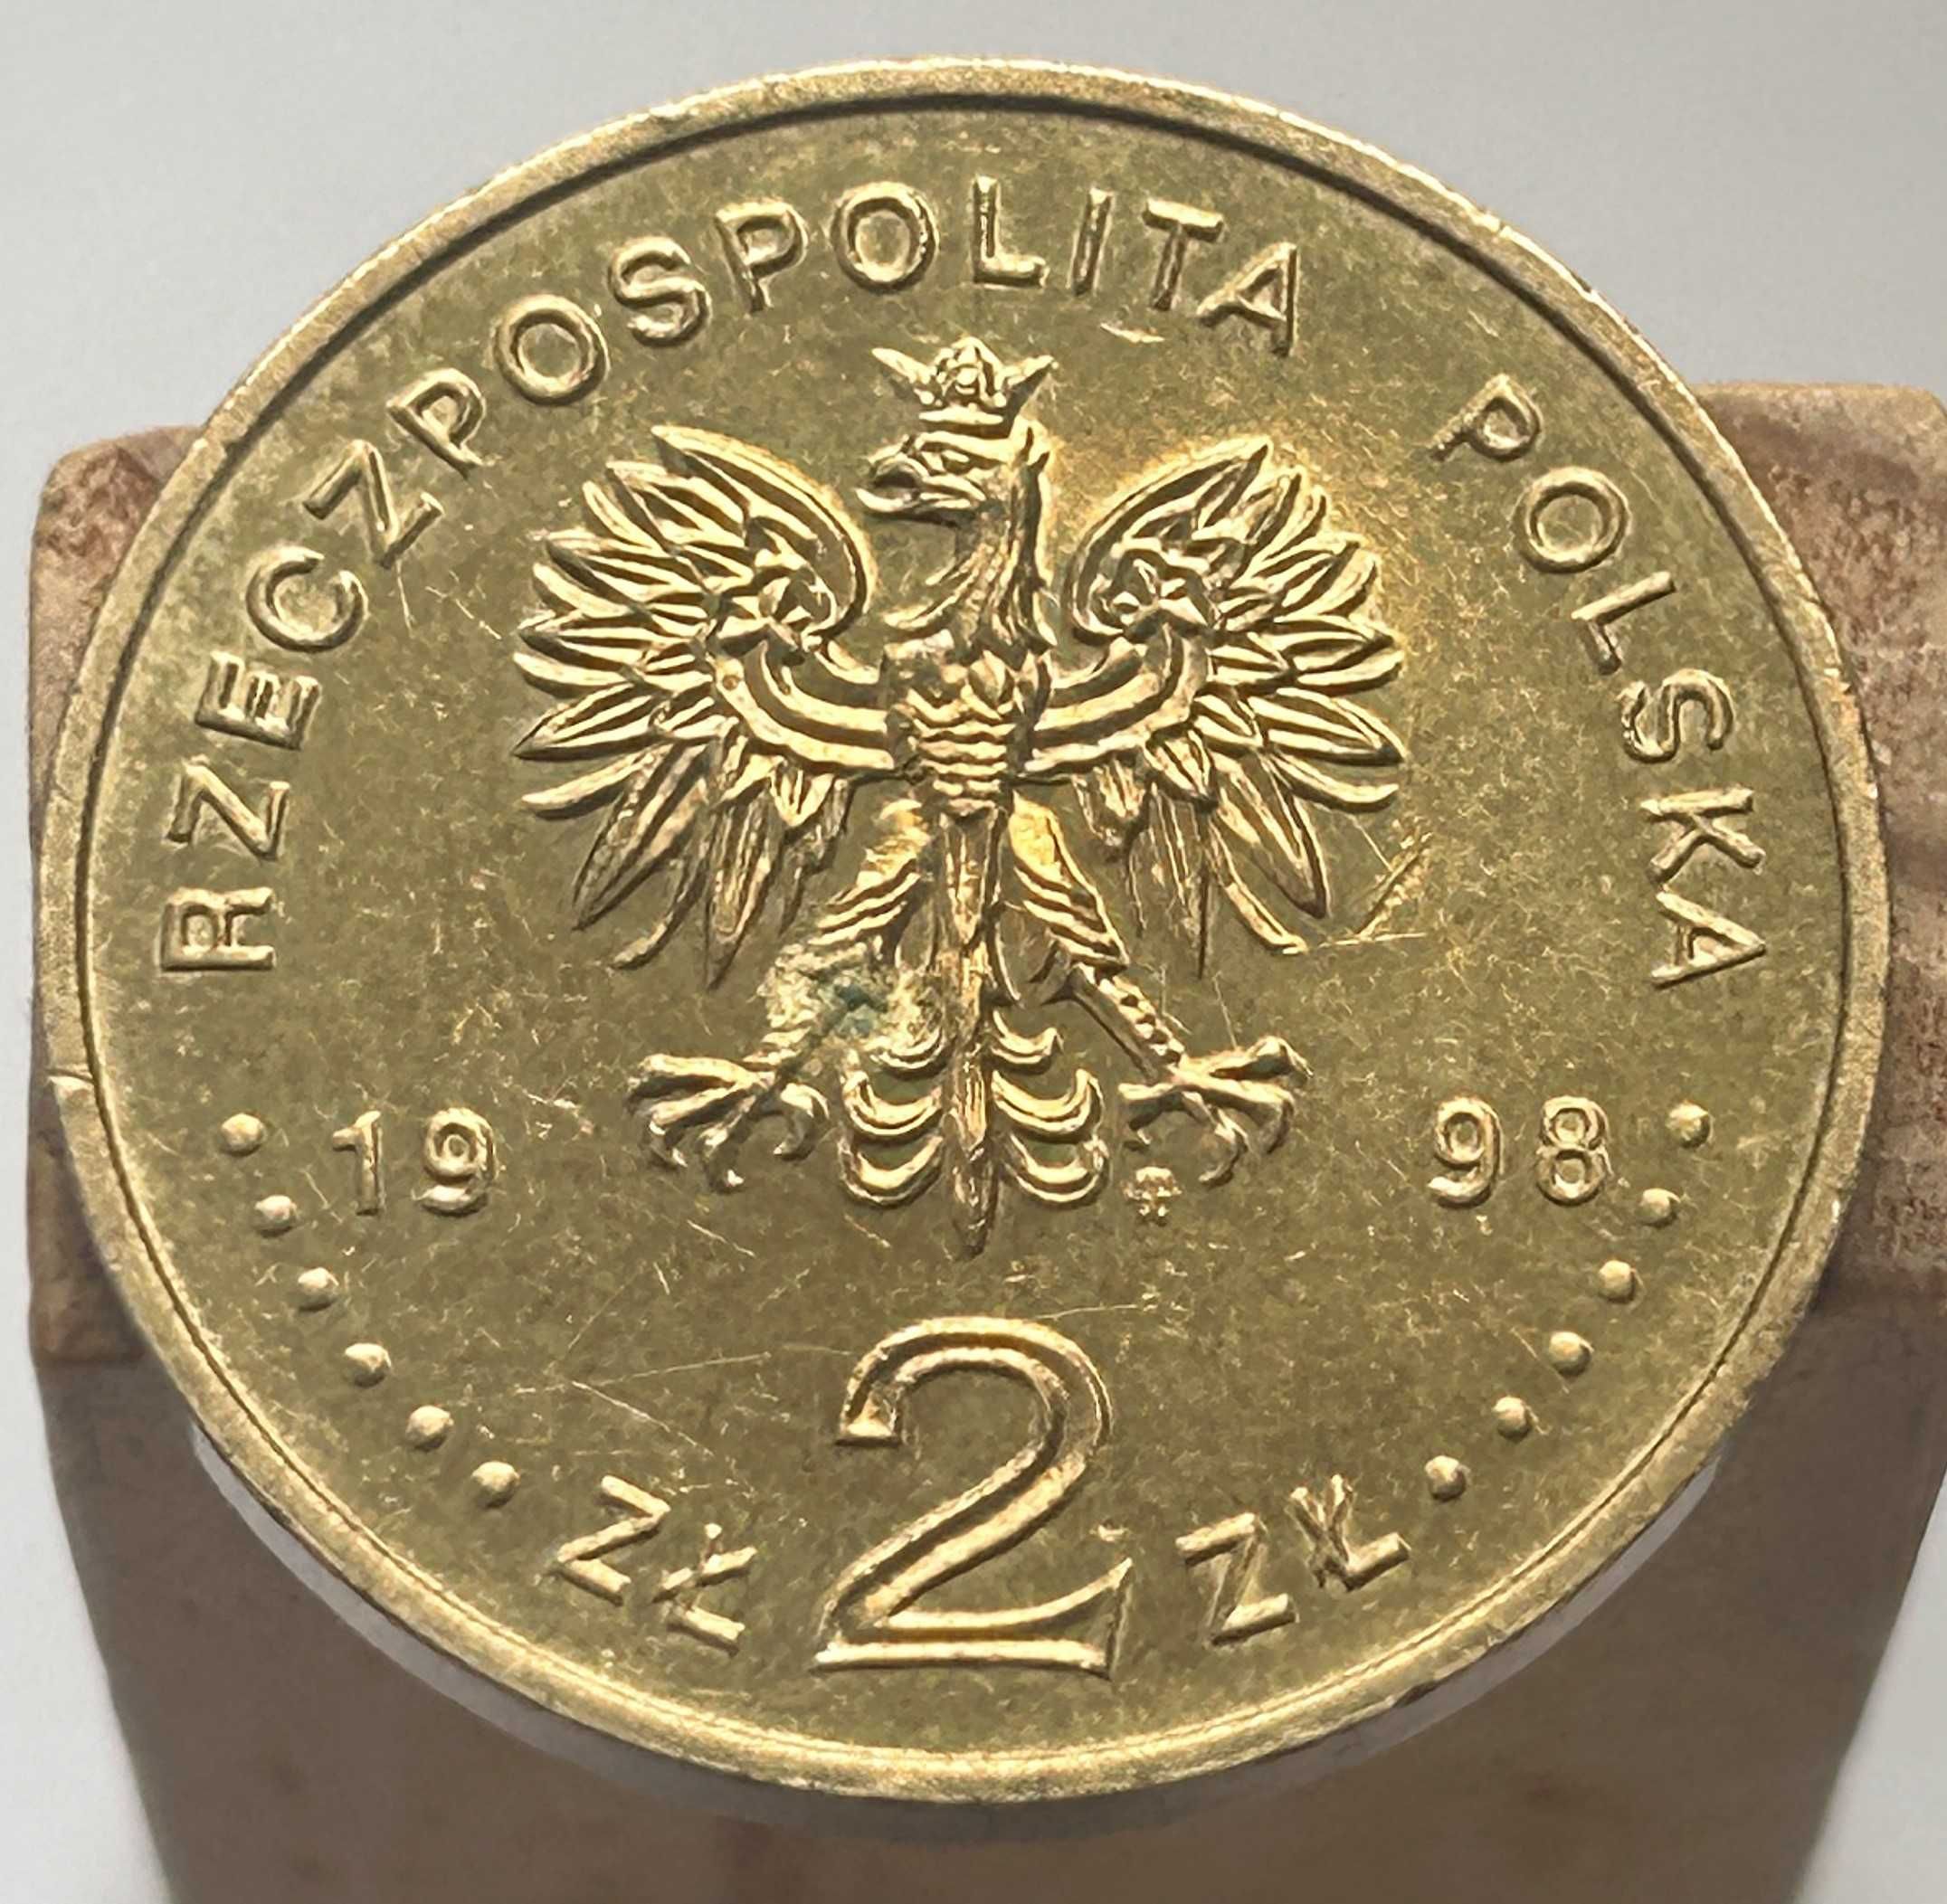 Moneta 2 zł 80 Rocznica Odzyskania Niepodległości 1998